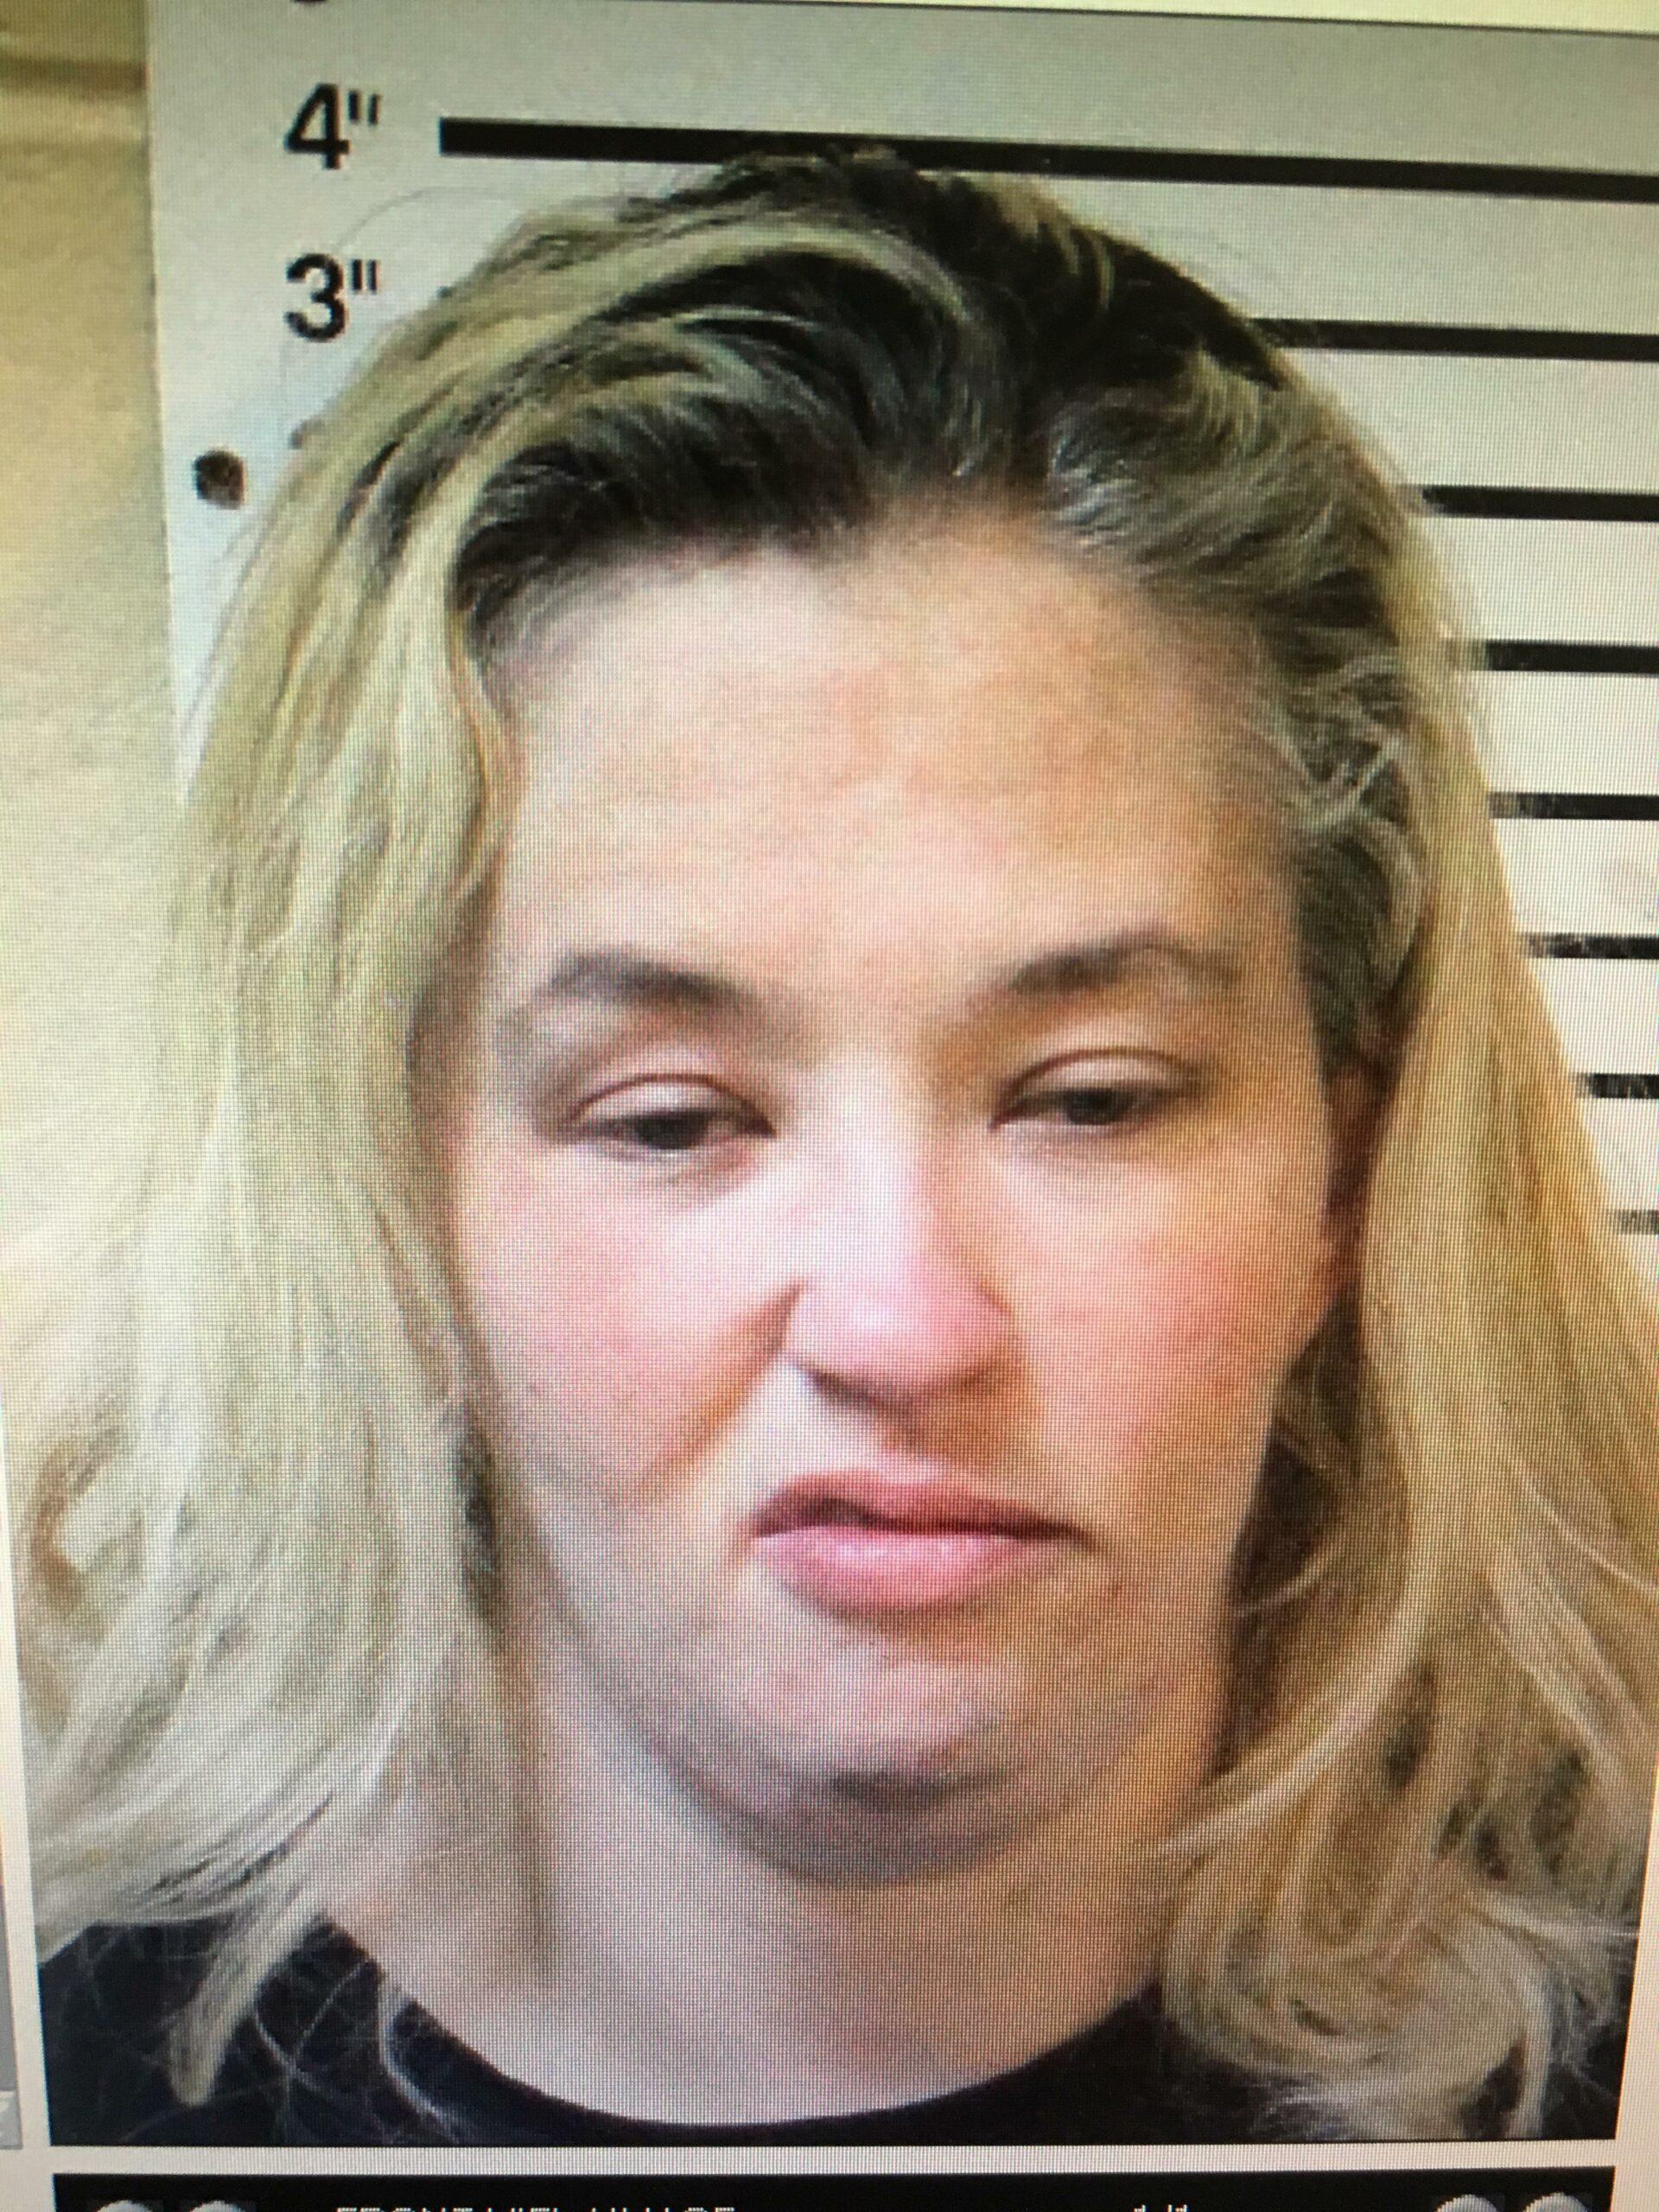 Sneering Mama June poses for mugshot after drug arrest